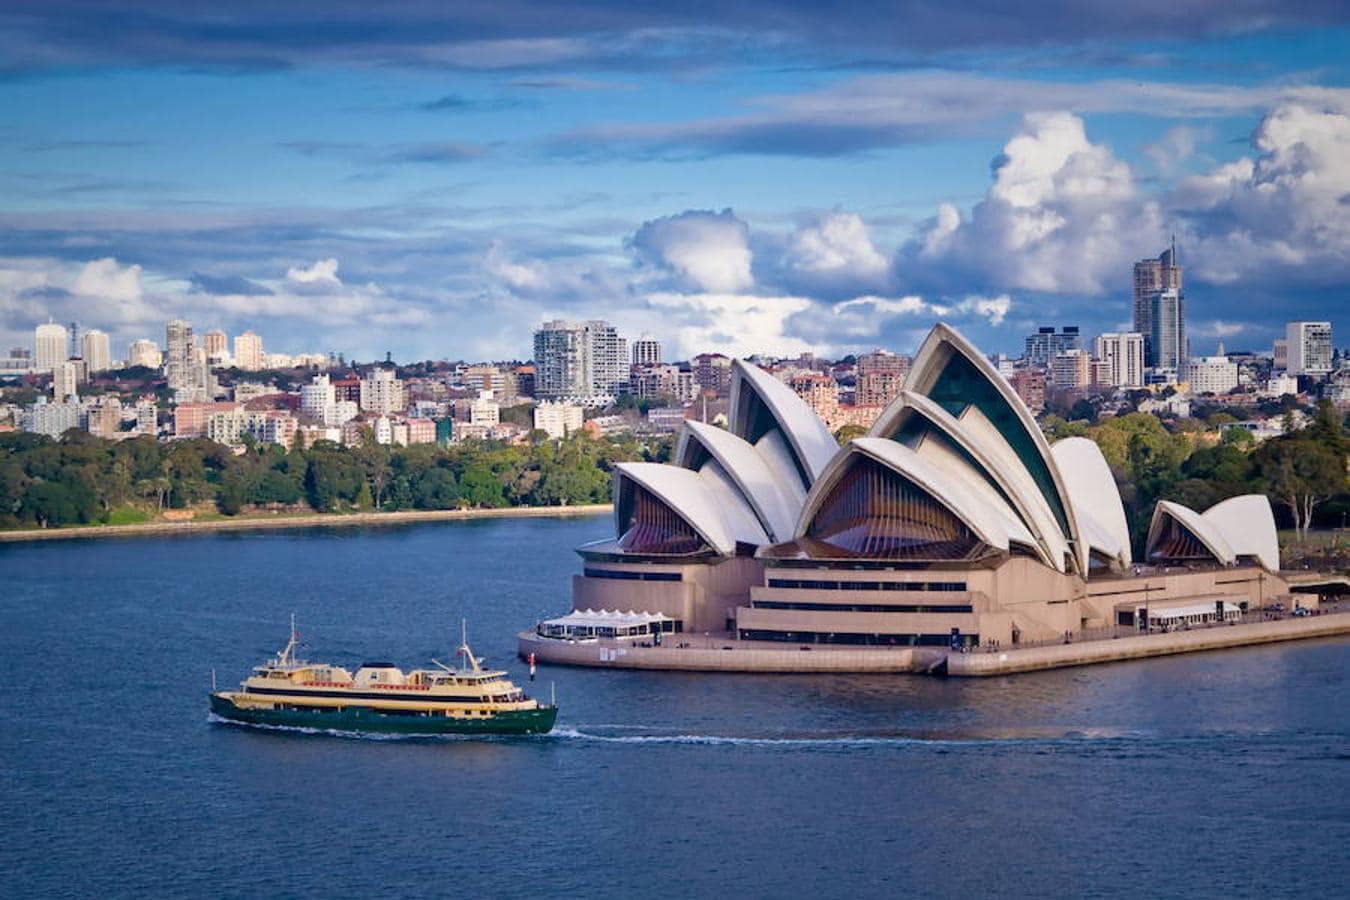 Sydney (Australia) | La ciudad cierra la lista de las 10 ciudades más caras del mundo. Por ejemplo, los precios de la vivienda han aumentado dramáticamente desde la década de 1980 y ahora son los inversores los que pueden permitirse el lujo de 'jugar' en su mercado.